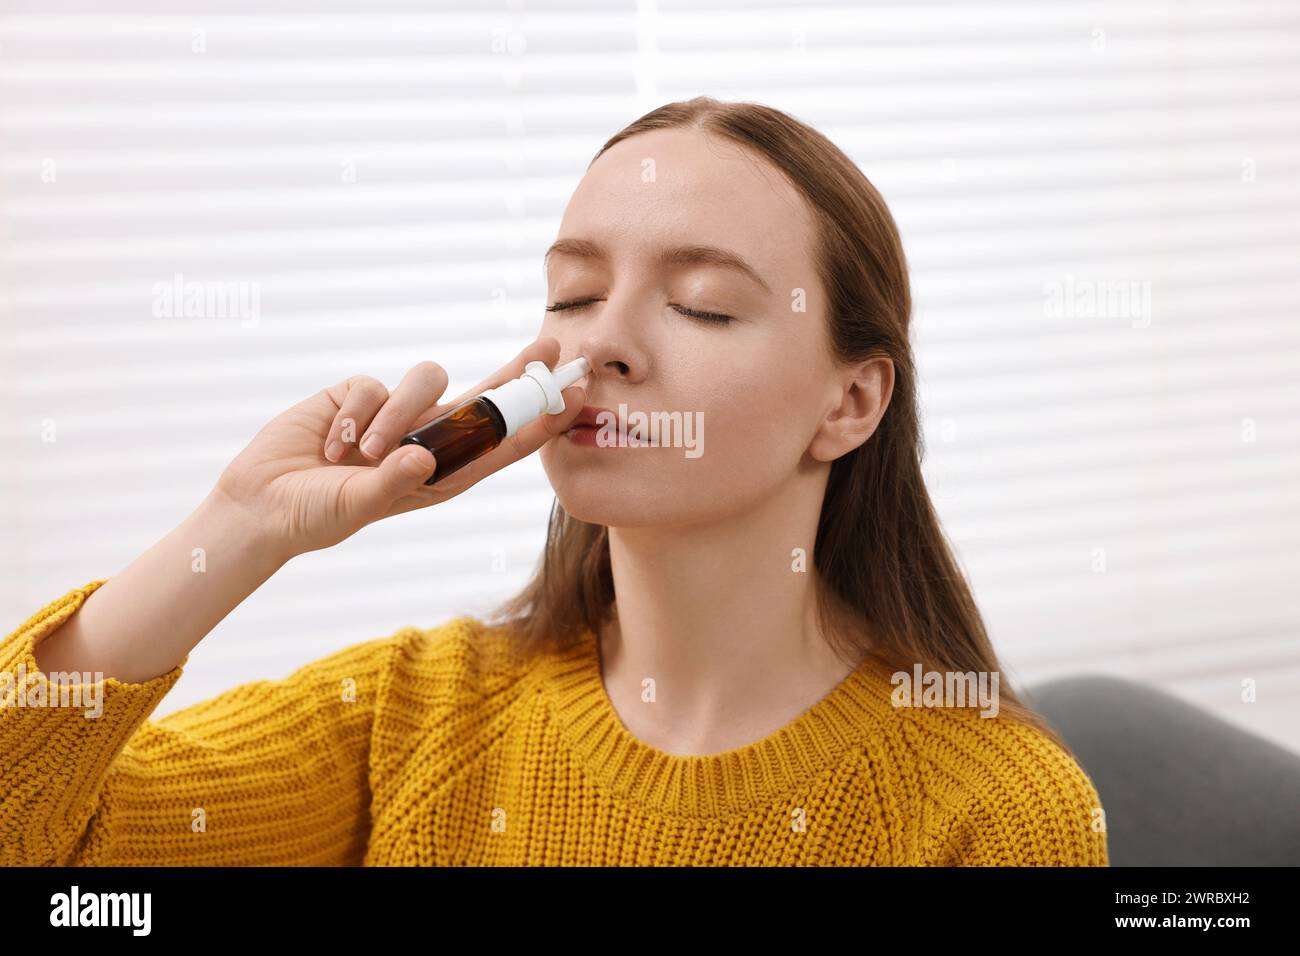 Medical drops. Young woman using nasal spray indoors Stock Photo